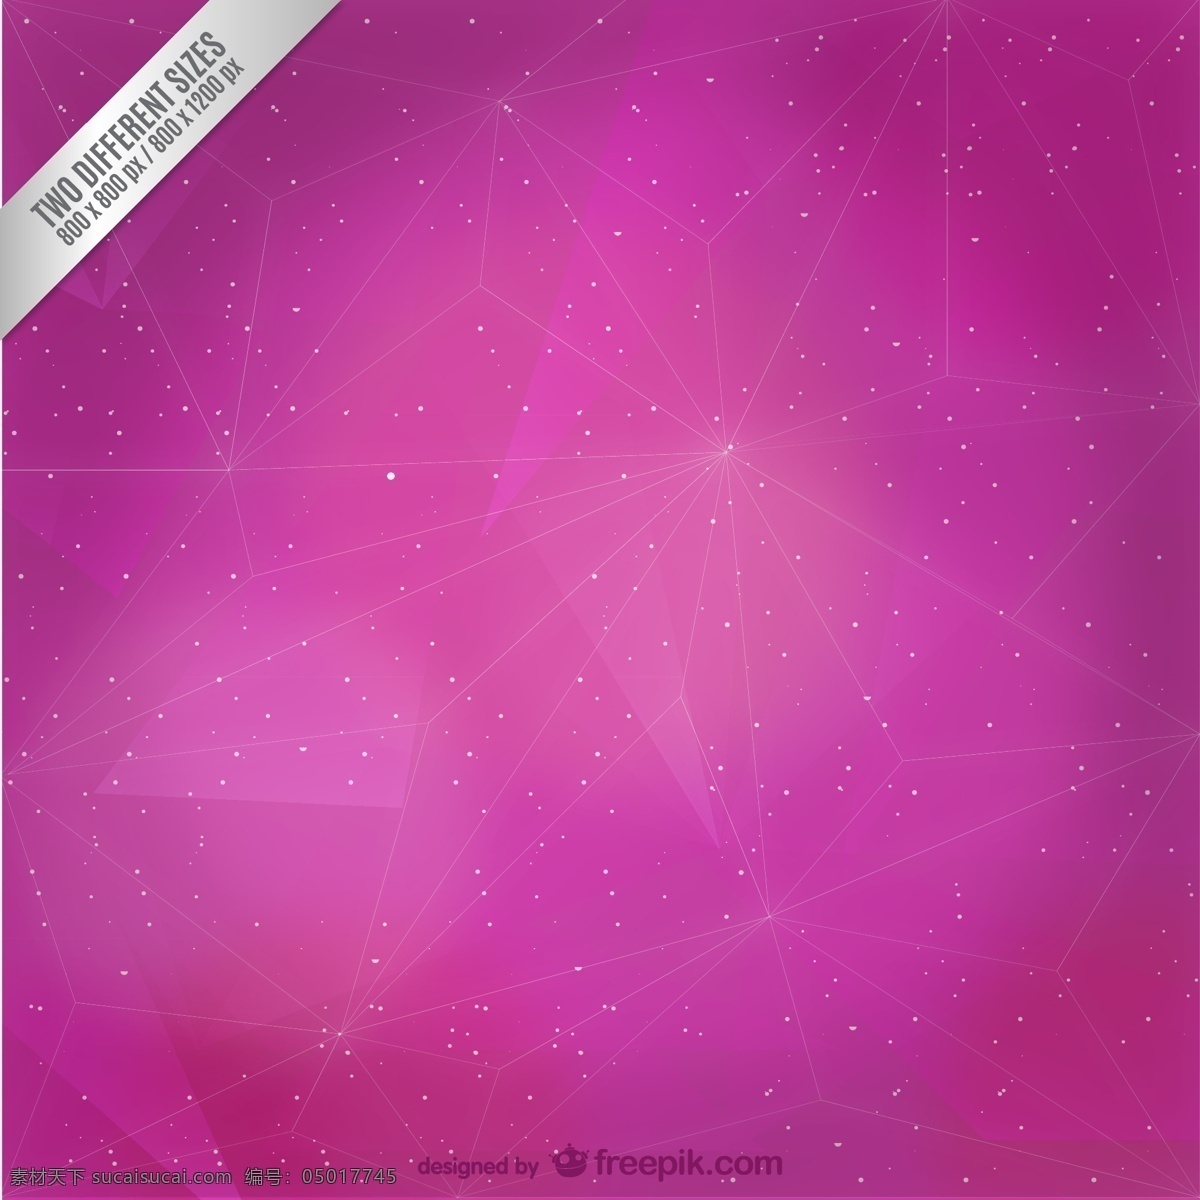 摘要 红色 多边形 背景 抽象 明星 三角形 粉红色 紫色 三角星 粉红的底色 紫色的背景 抽象的设计 明星的背景 星座 背景设计 紫红色